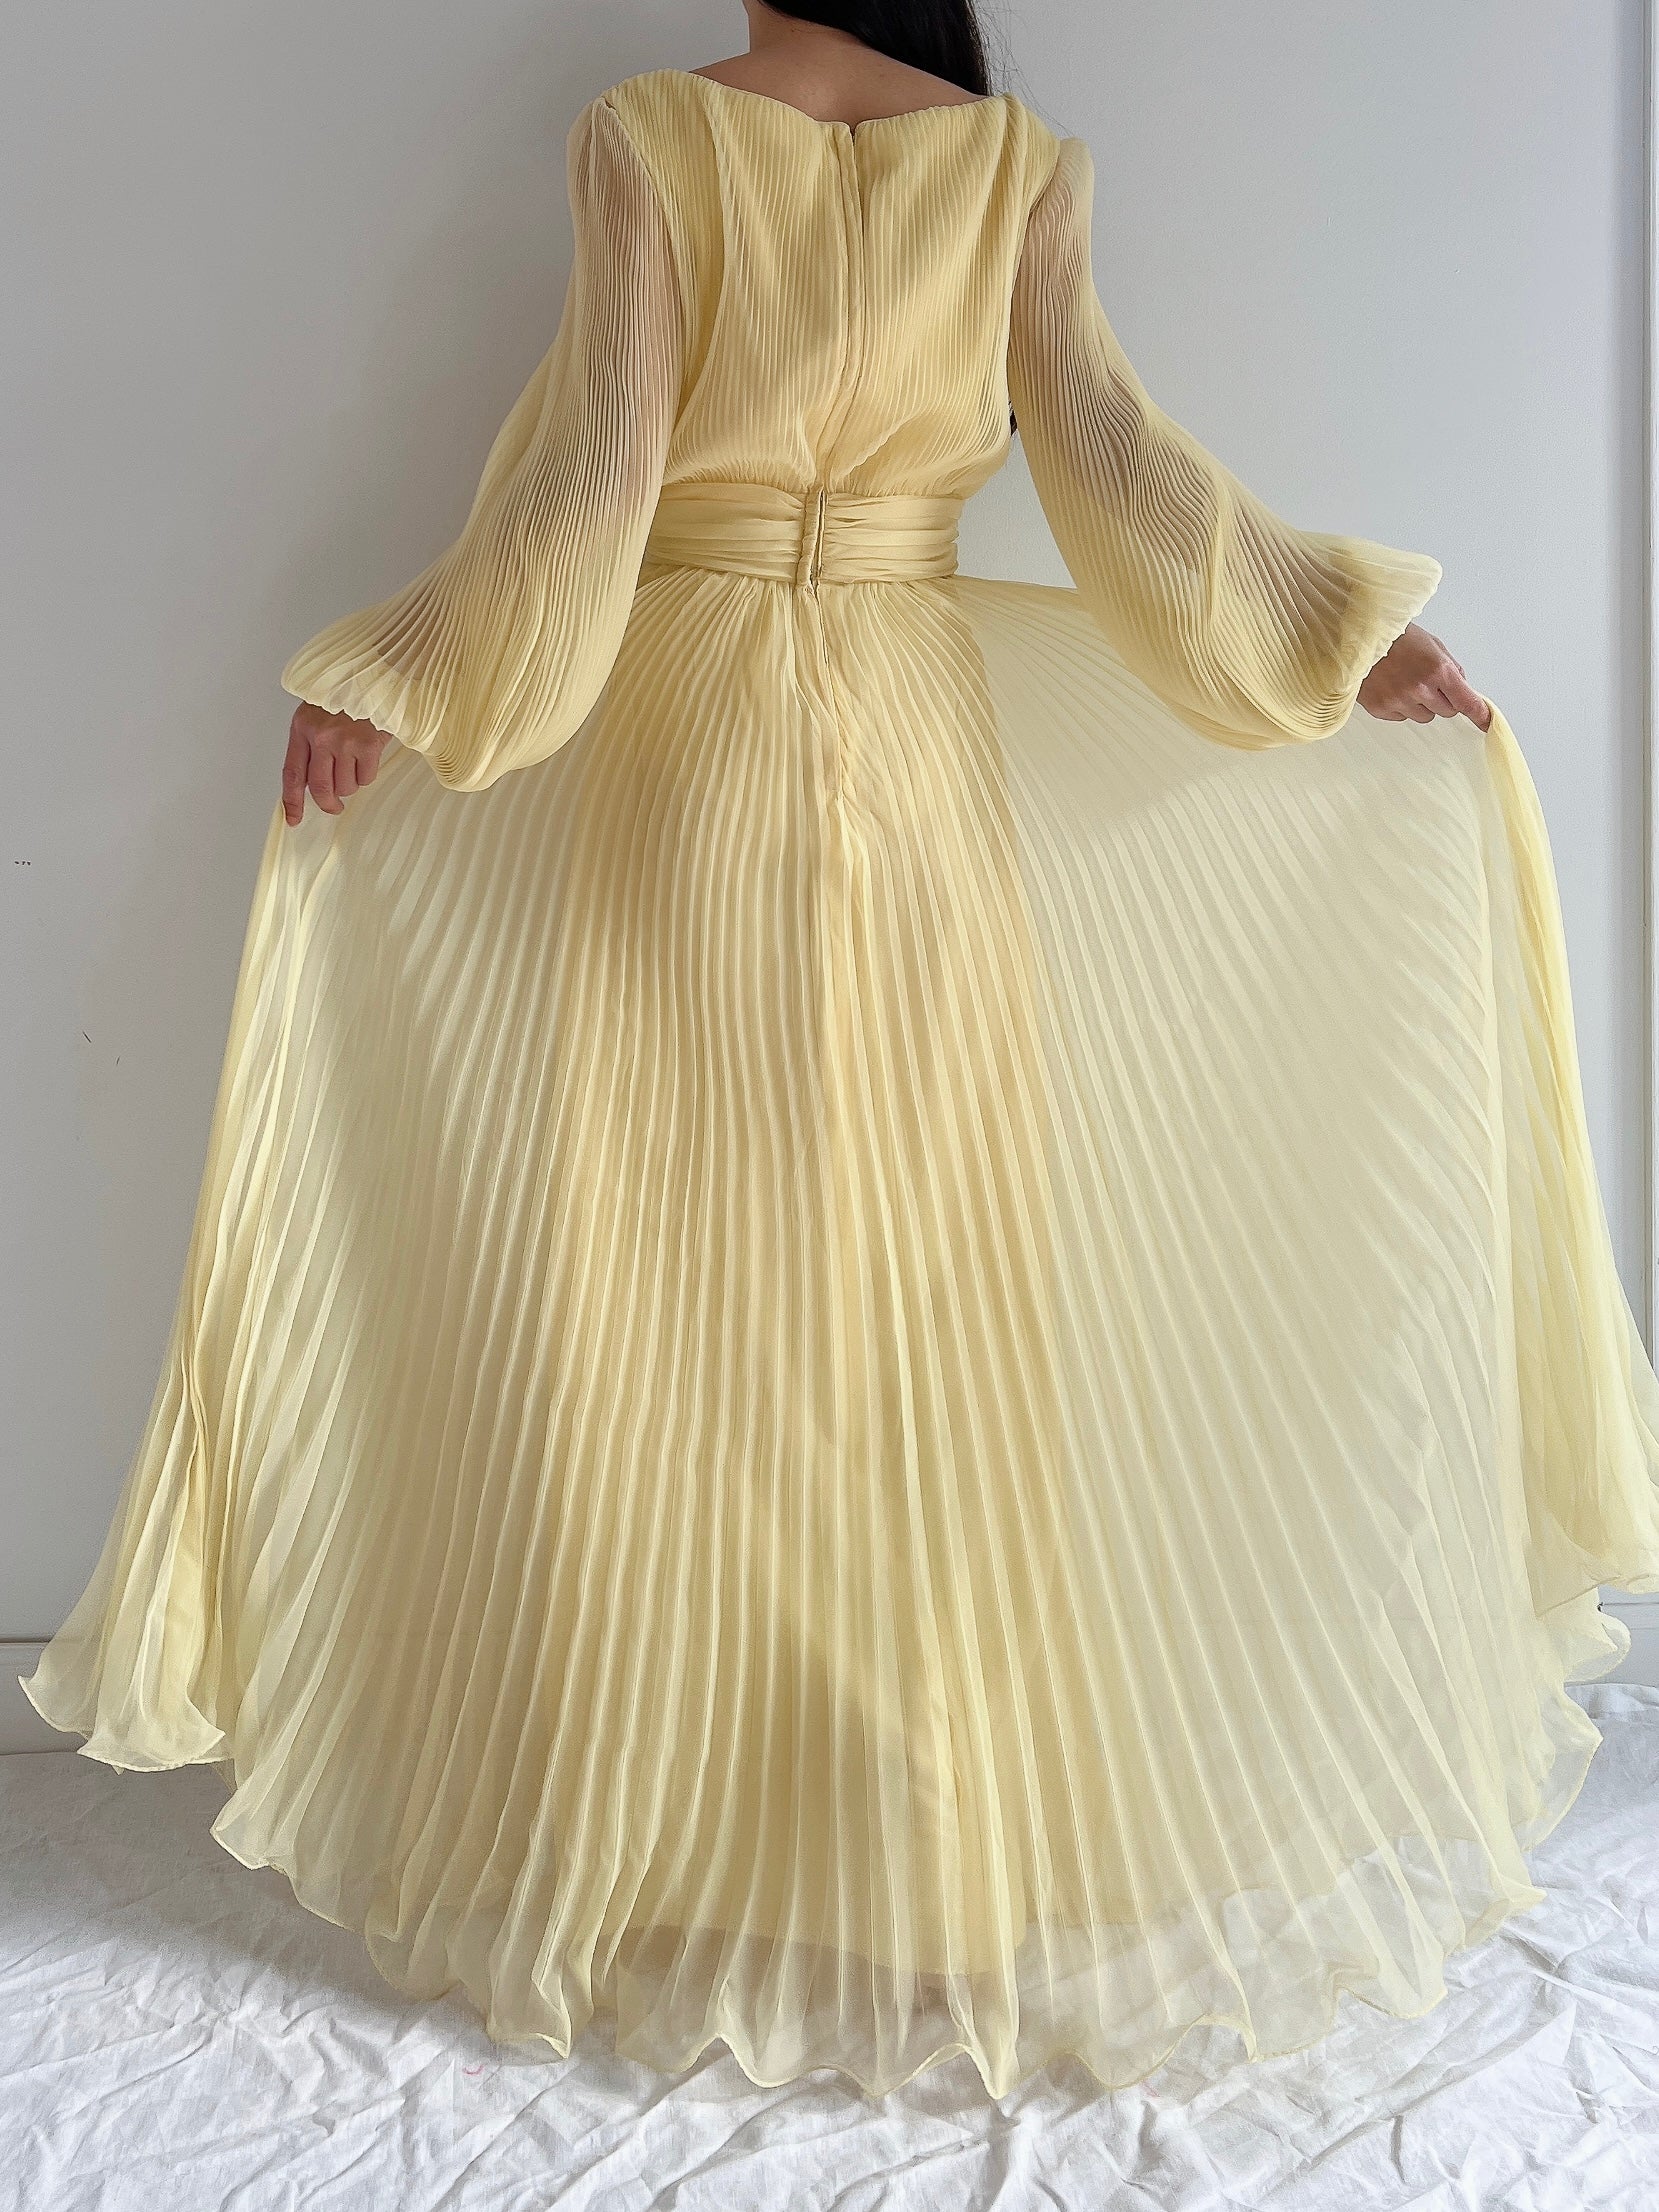 Vintage Chiffon Poet Sleeve Dress - S